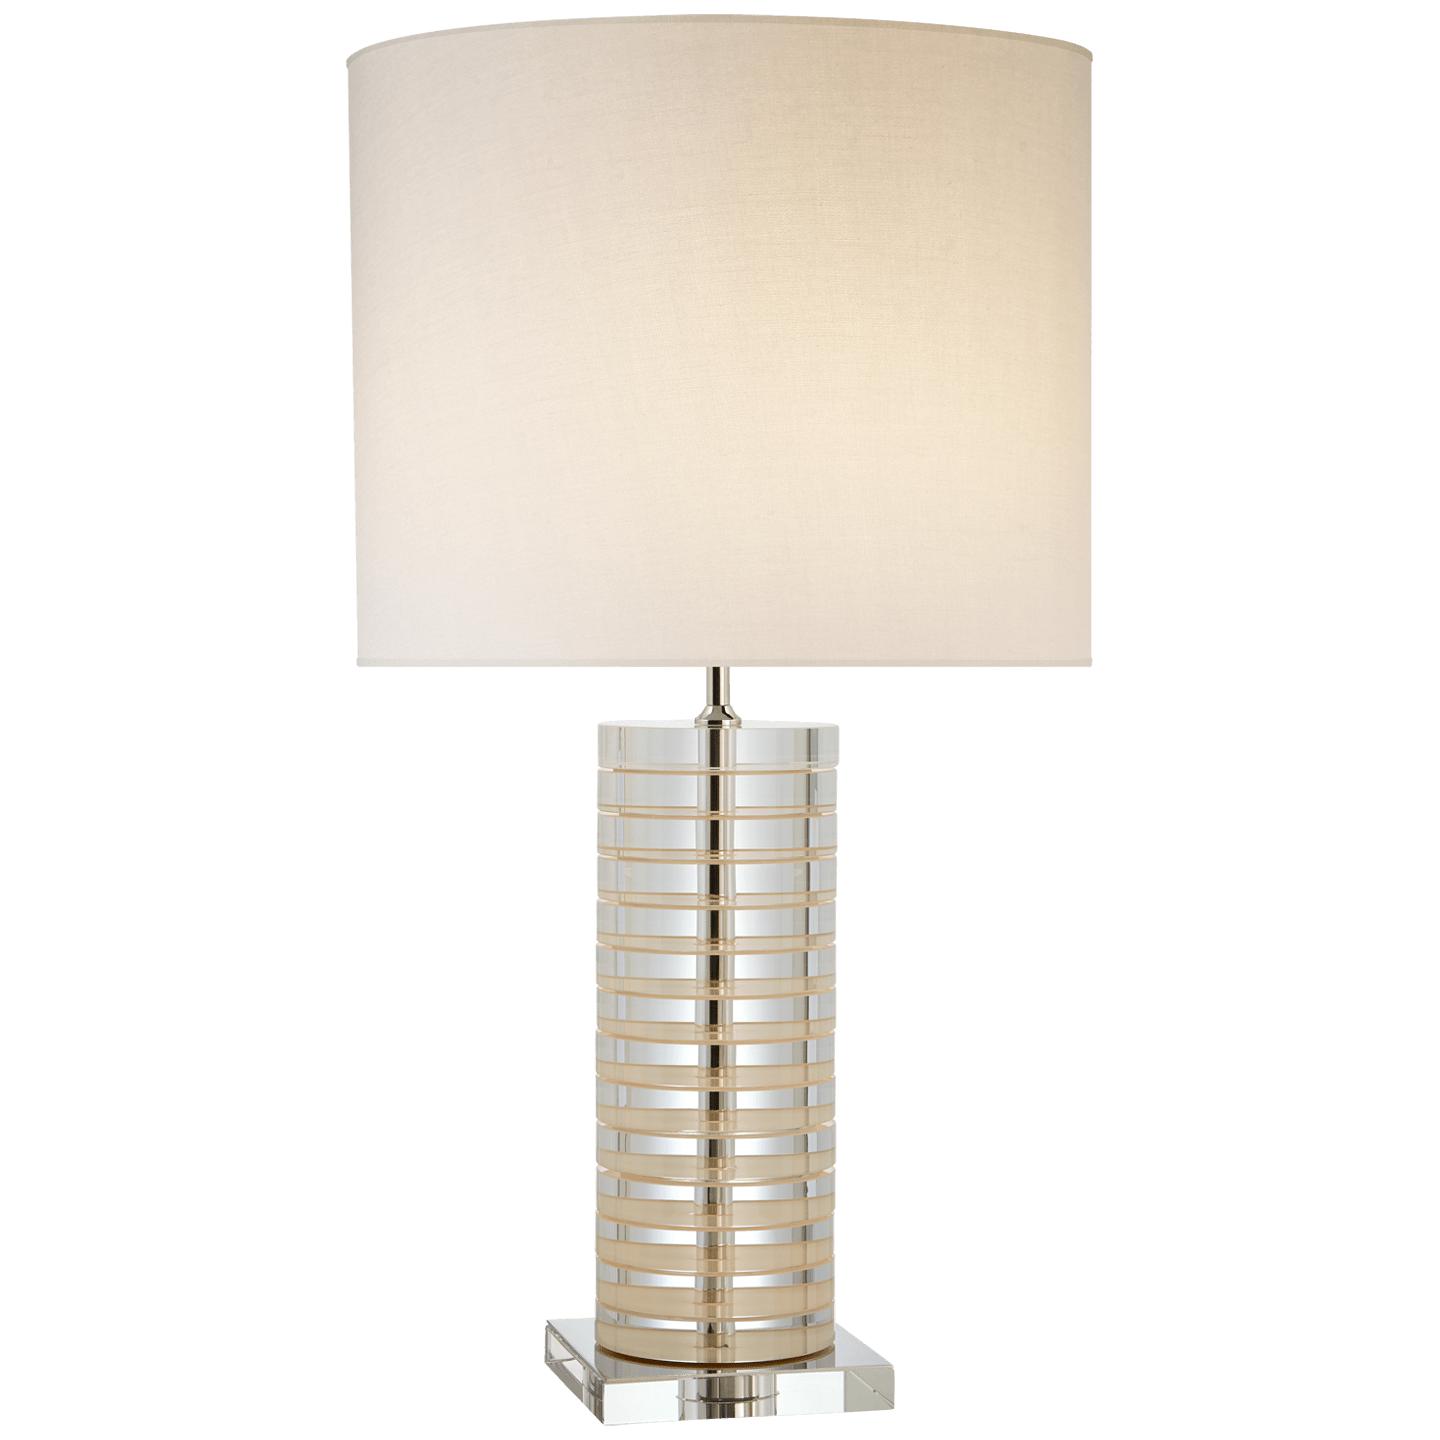 Купить Настольная лампа Grayson Stacked Table Lamp в интернет-магазине roooms.ru